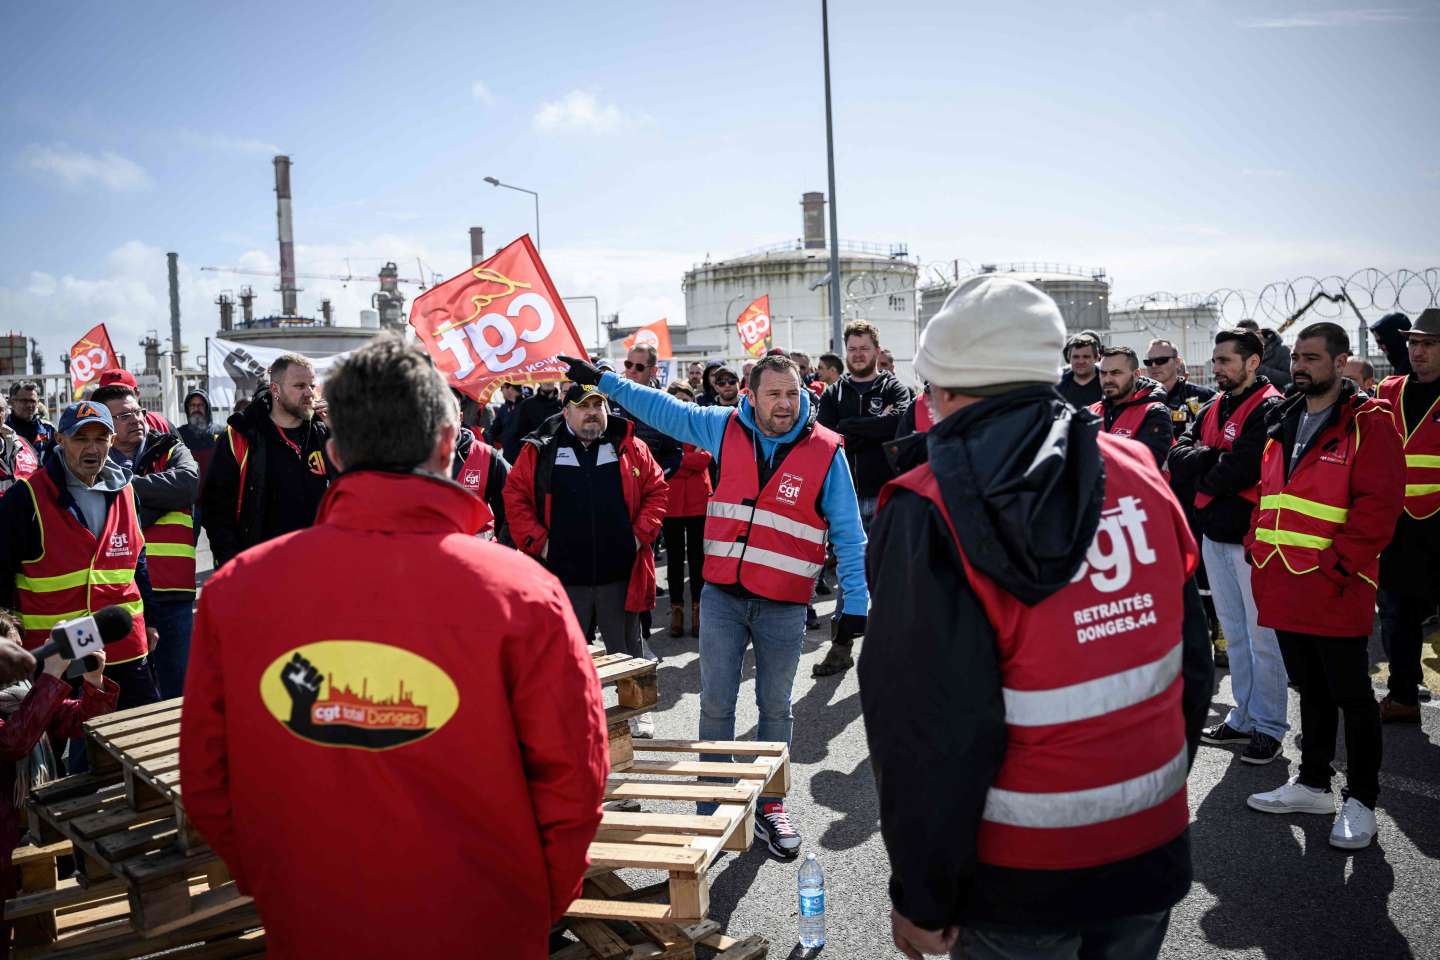 A la raffinerie TotalEnergies de Donges : « On entre dans notre quatrième semaine de grève, fatigués mais déterminés »